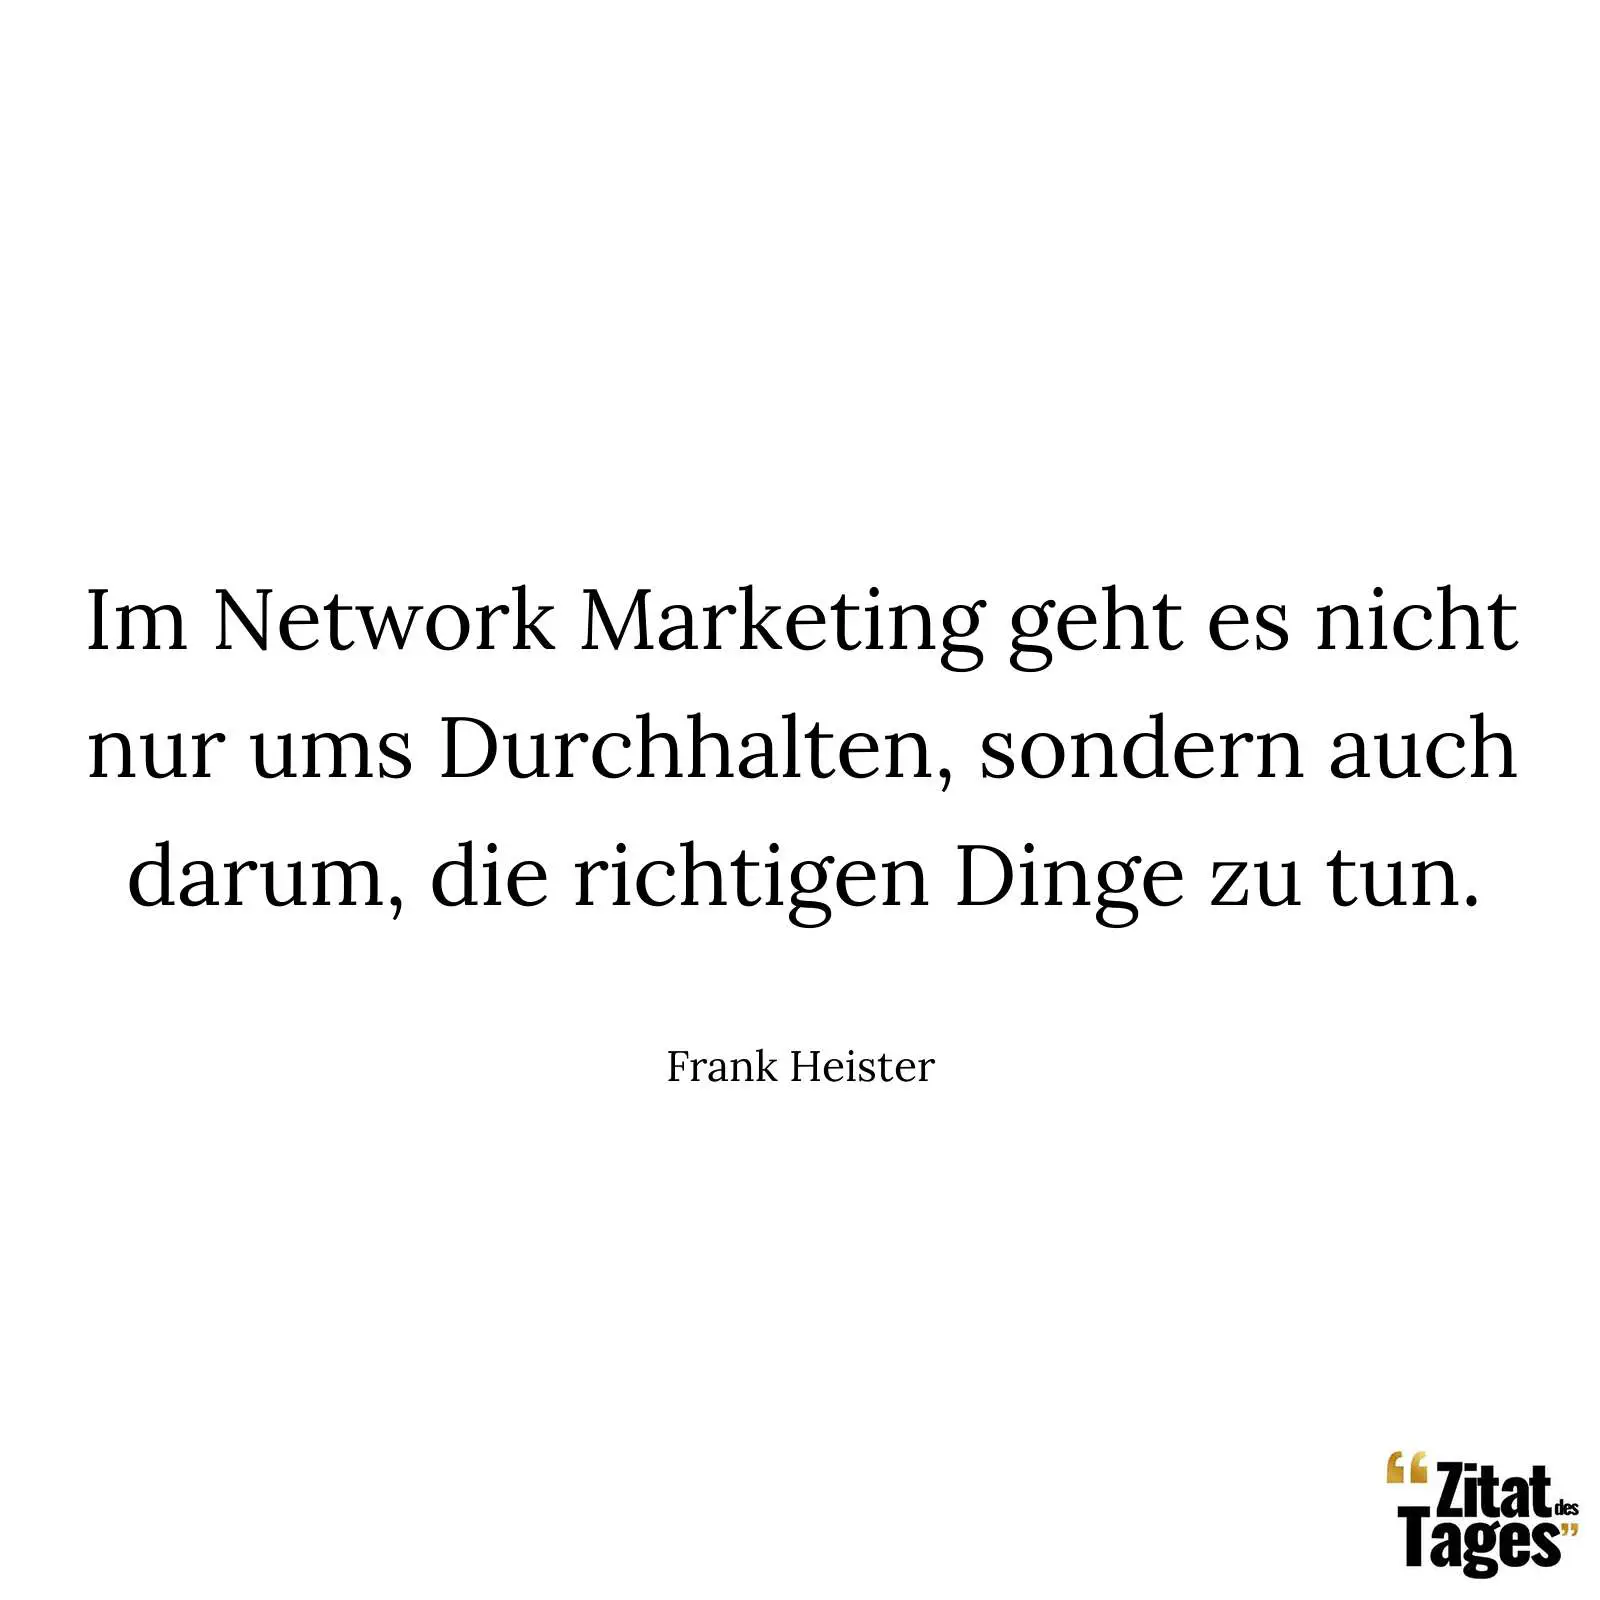 Im Network Marketing geht es nicht nur ums Durchhalten, sondern auch darum, die richtigen Dinge zu tun. - Frank Heister